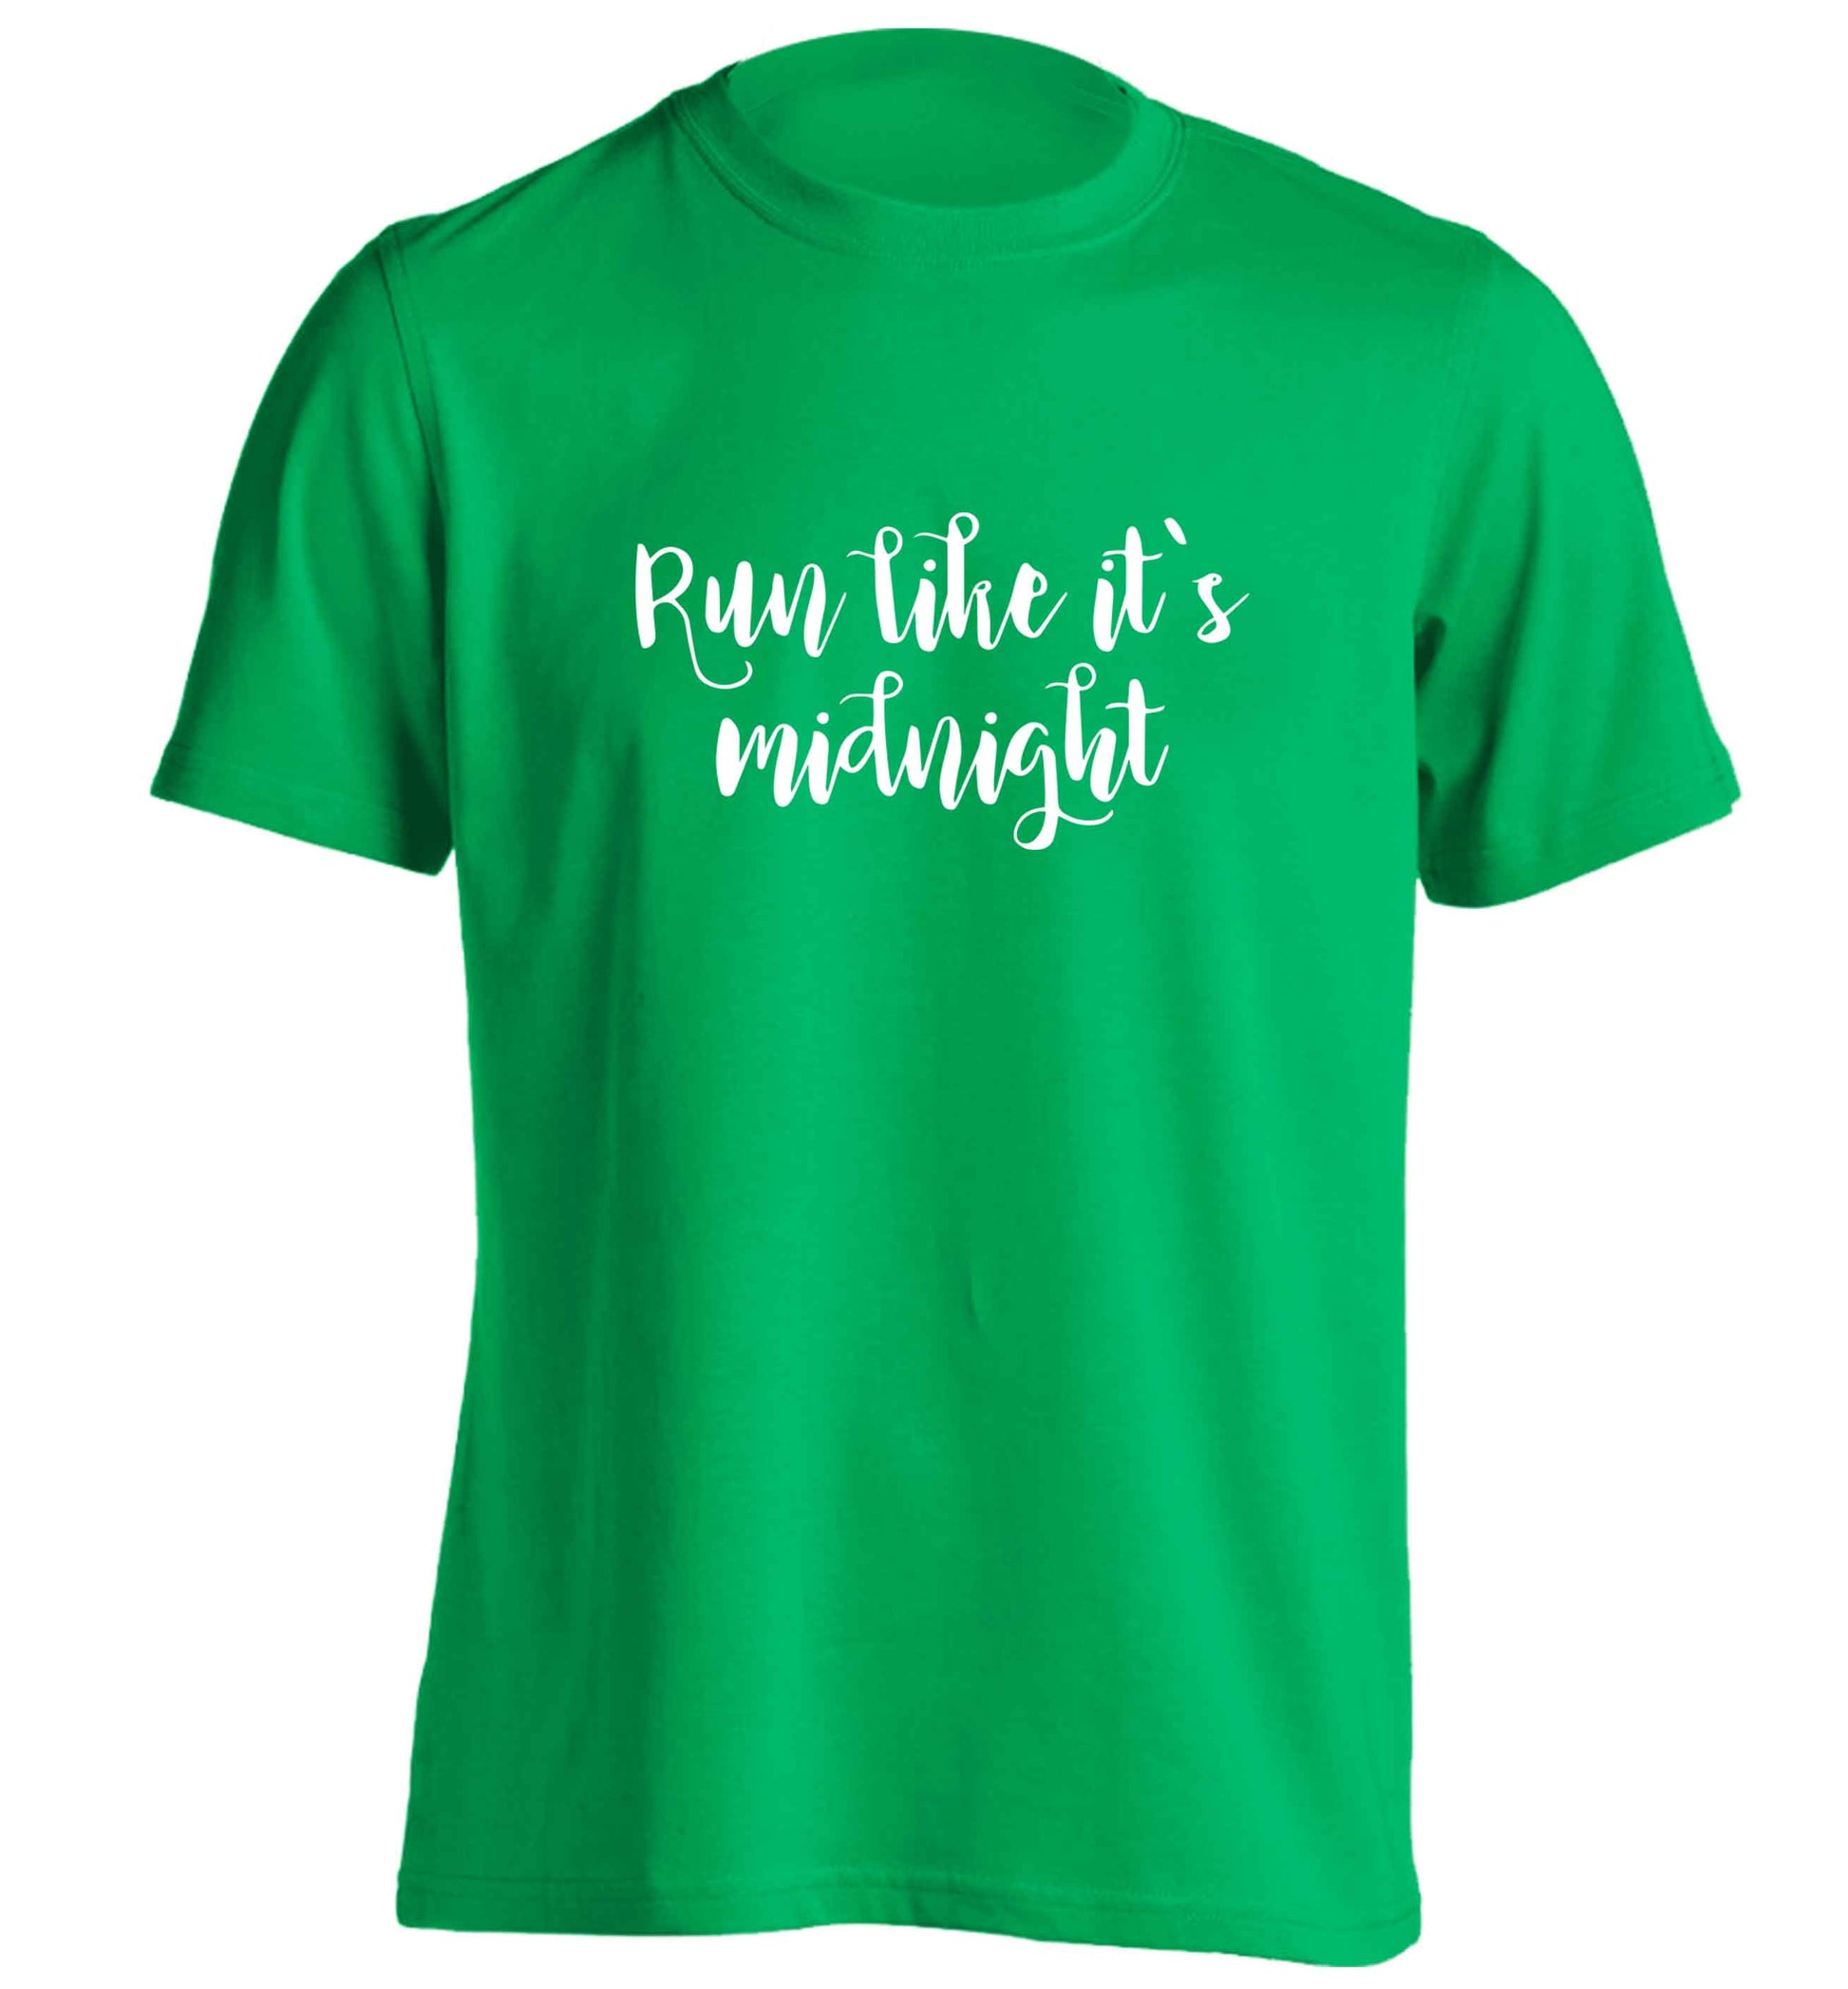 Run like it's midnight adults unisex green Tshirt 2XL